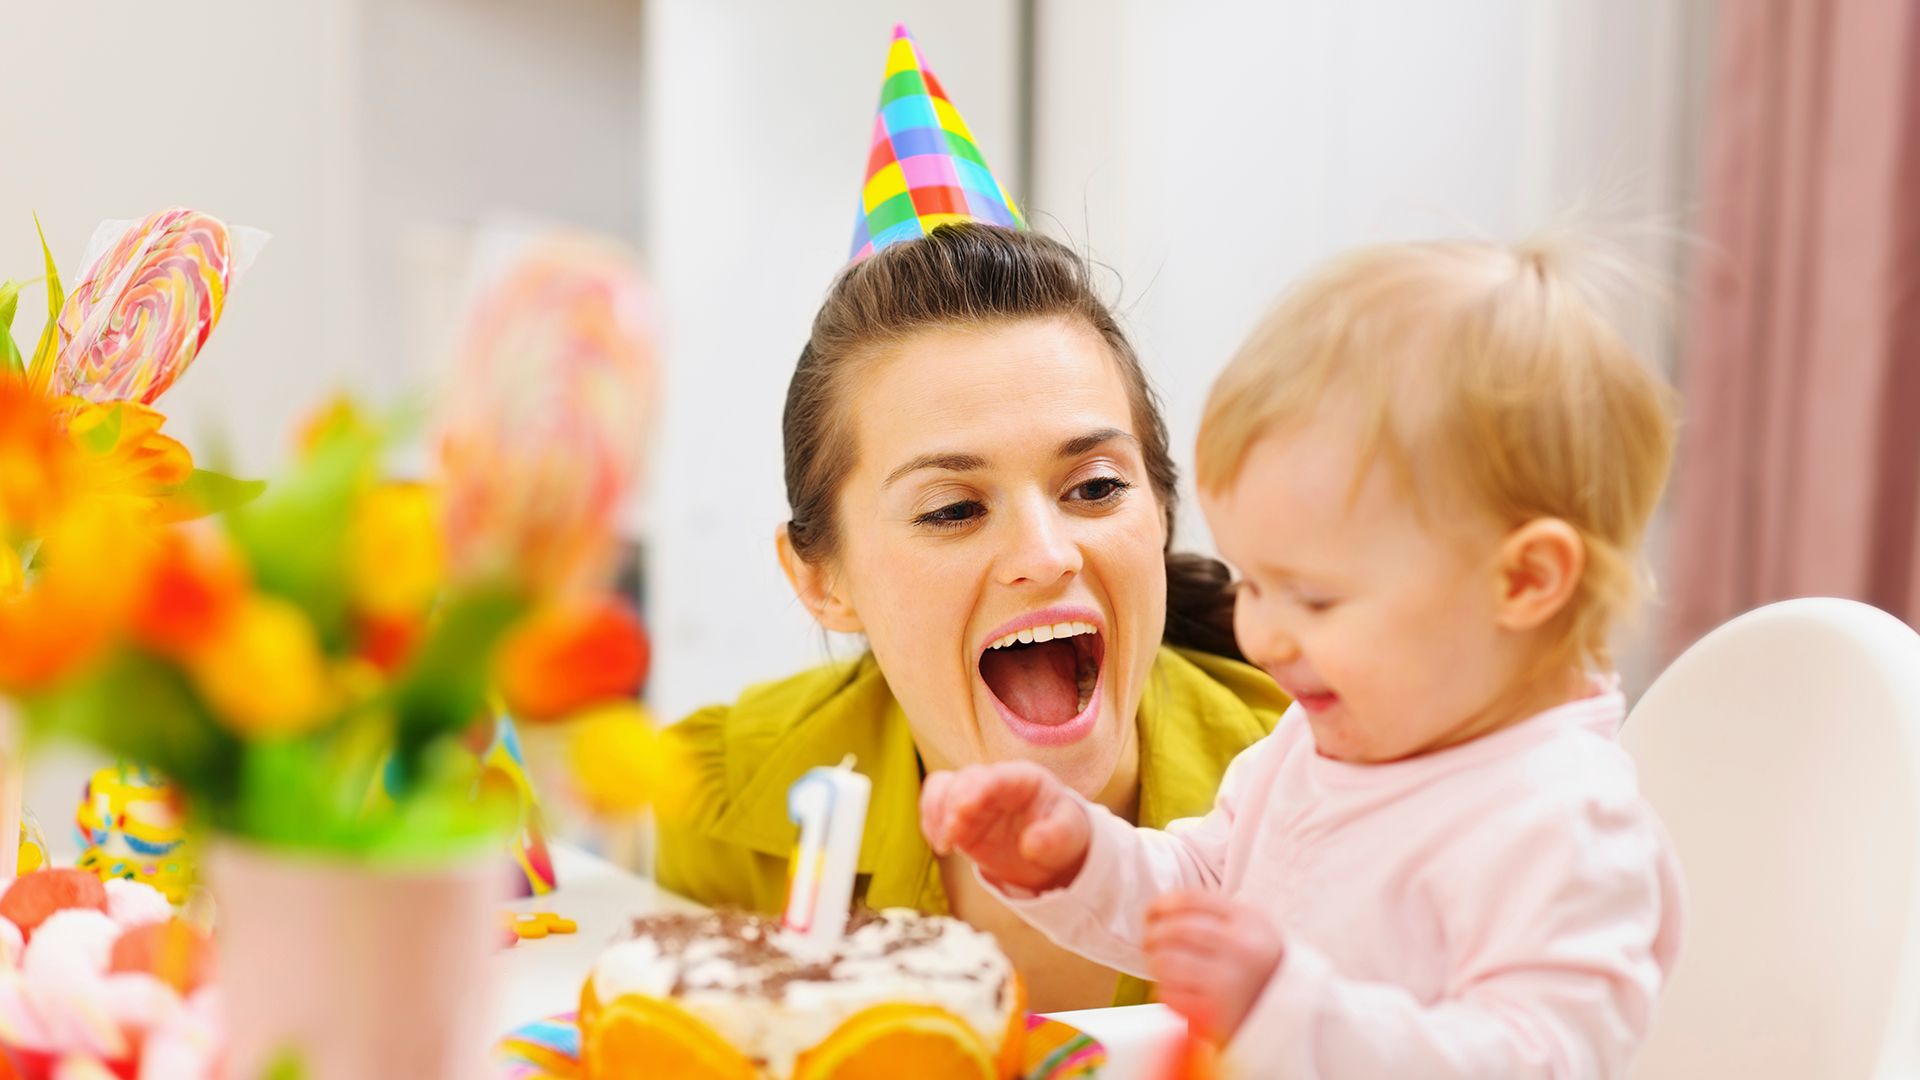 Надо ли "с размахом" праздновать день рождения - 1 годик ребёнку? - страна мам